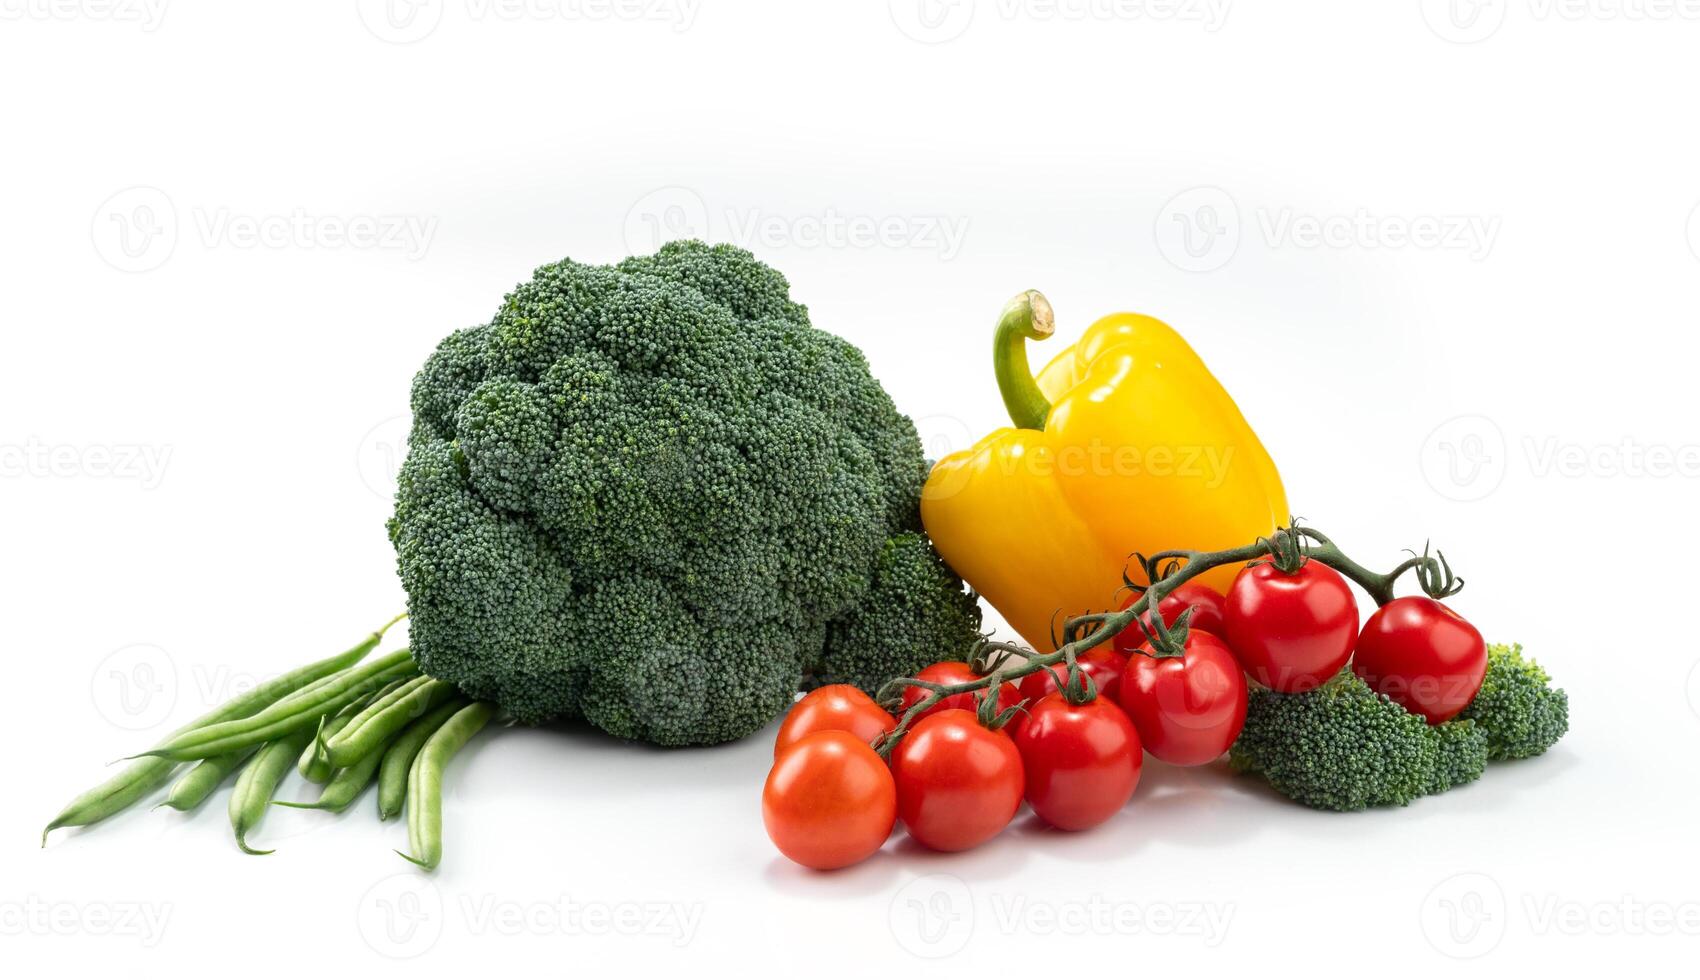 Komposition von Gemüse auf ein Weiß Hintergrund - - Brokkoli, Grün eingelegt, Pfeffer und Kirsche Tomaten foto